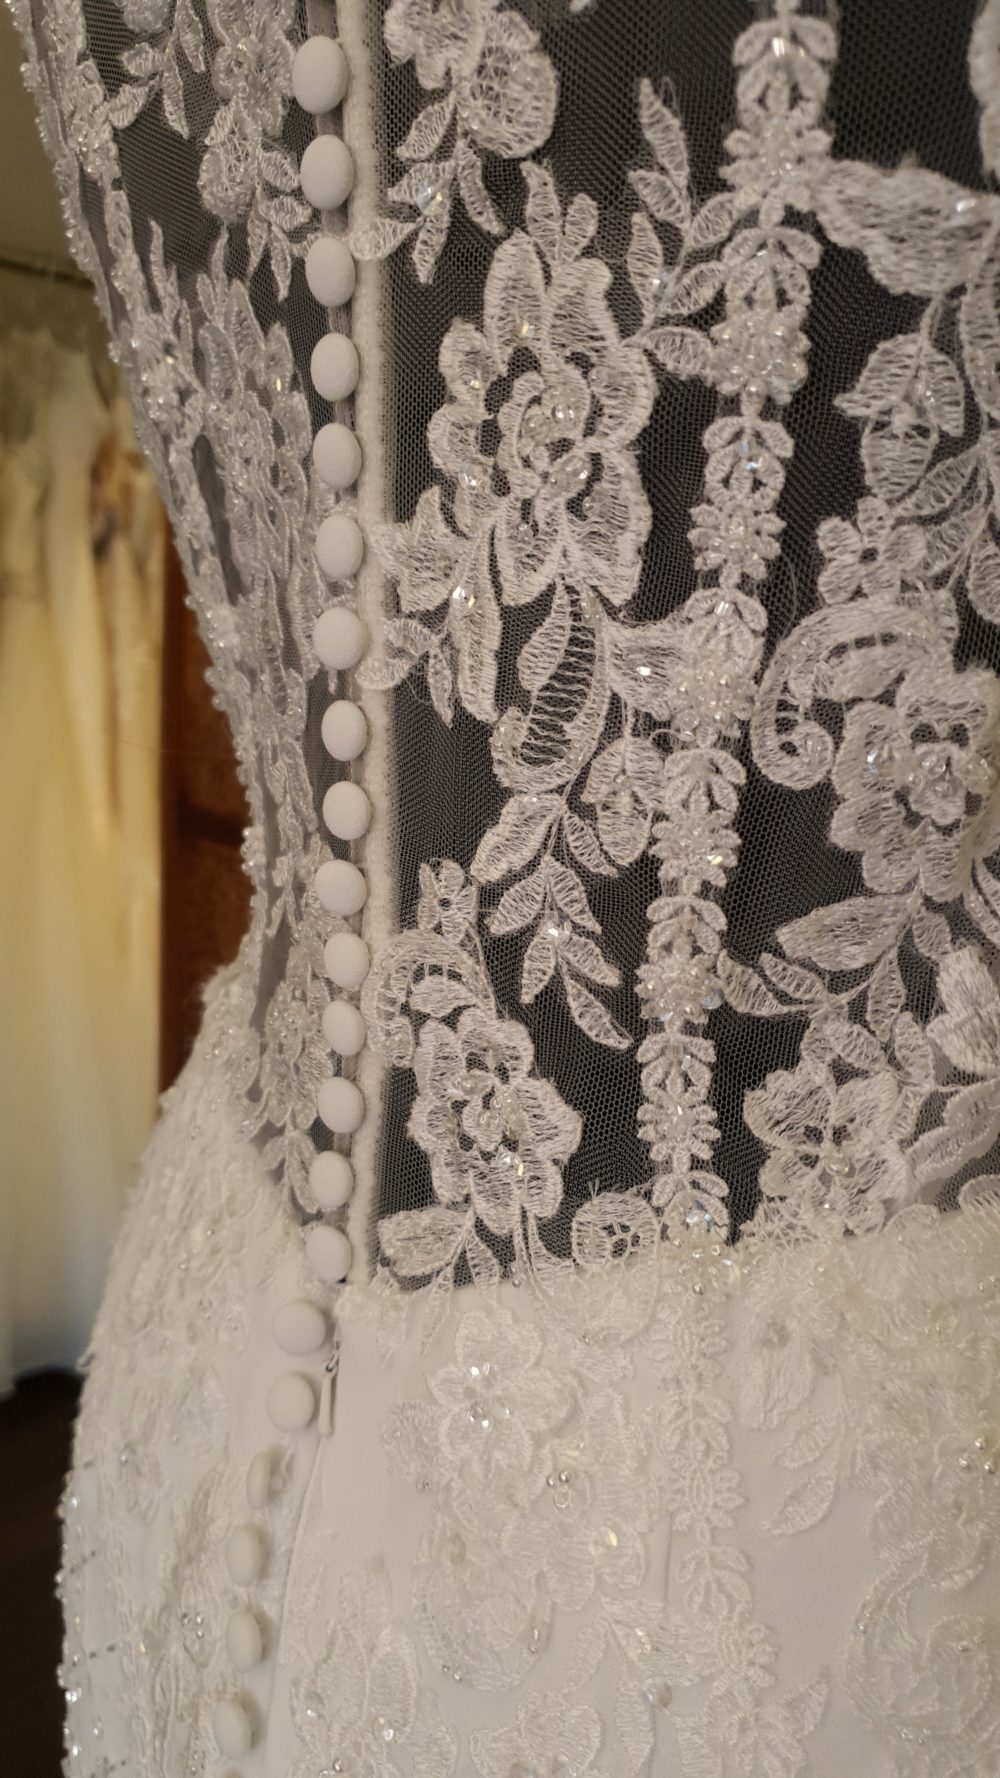 Smuk slank brudekjole med perlebesatte blonder og halterneck. Transparent dekorativ lukket ryg.